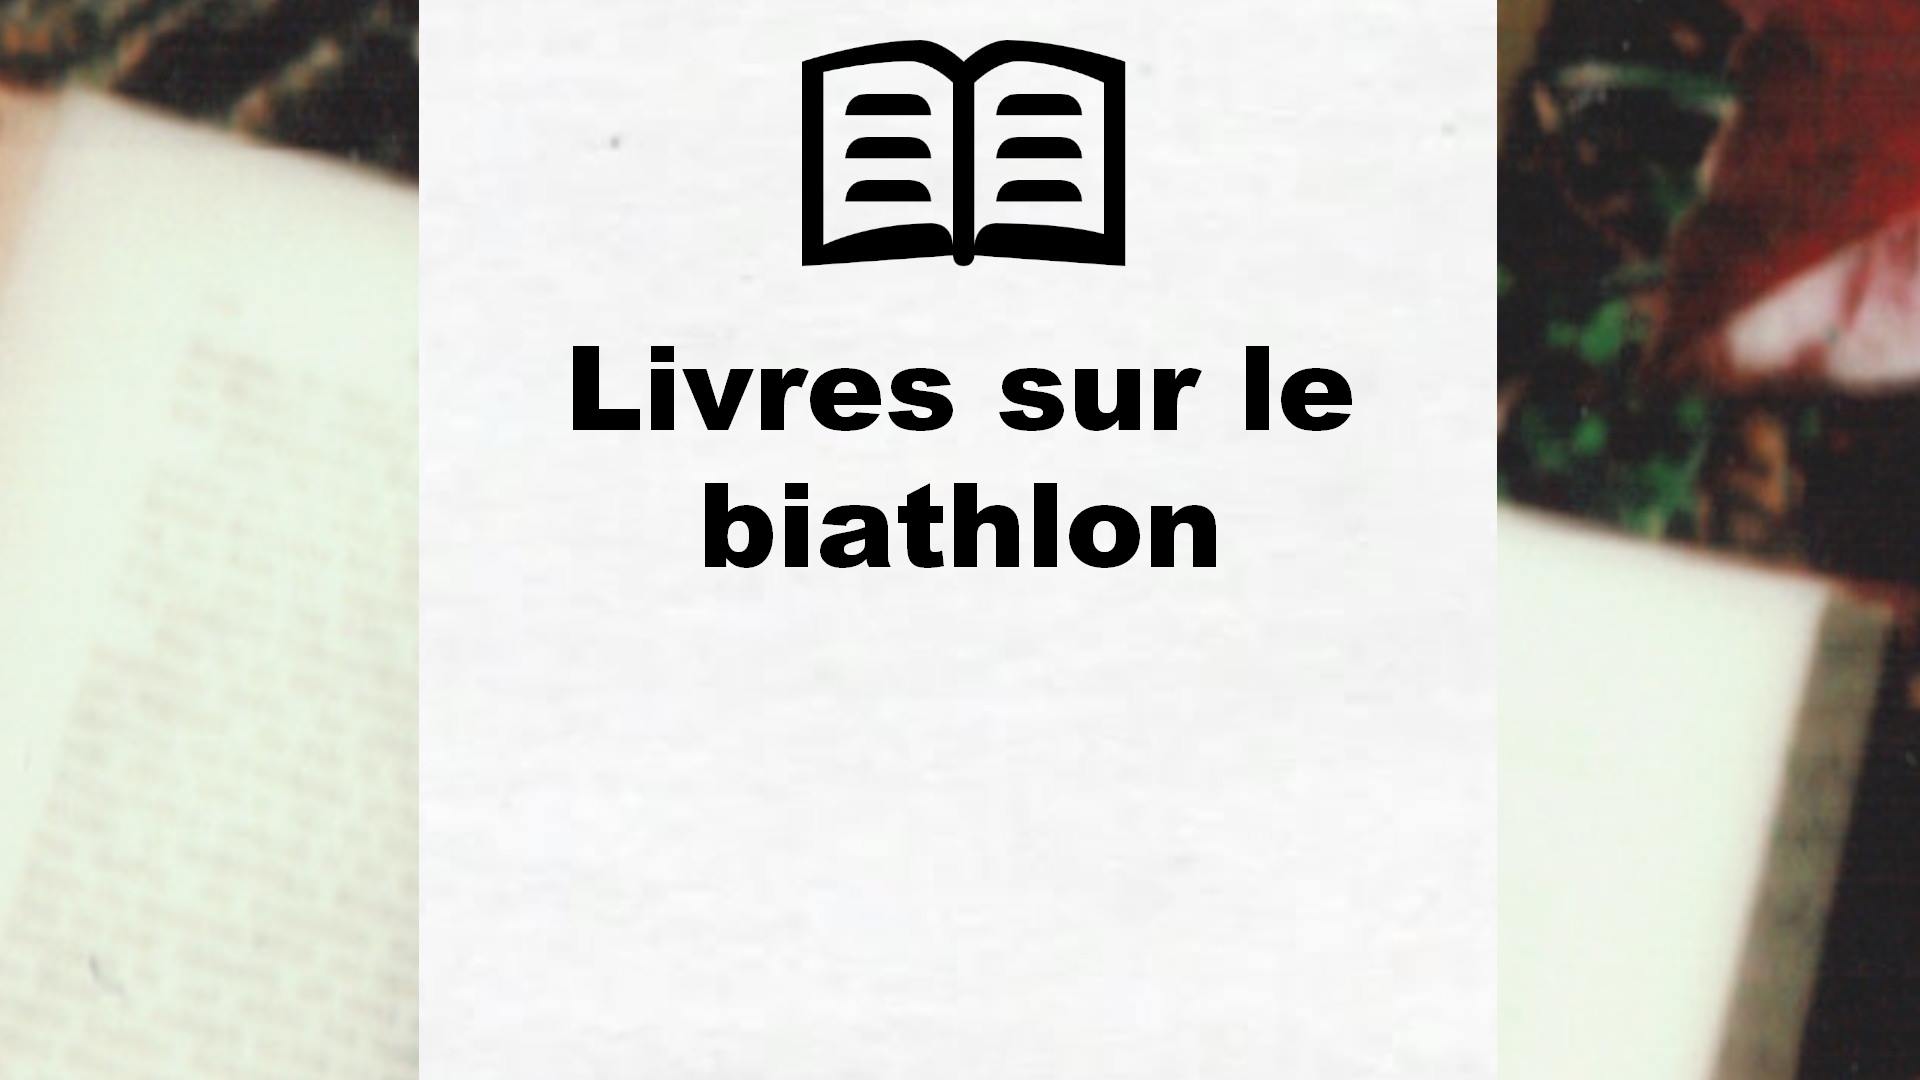 Livres sur le biathlon